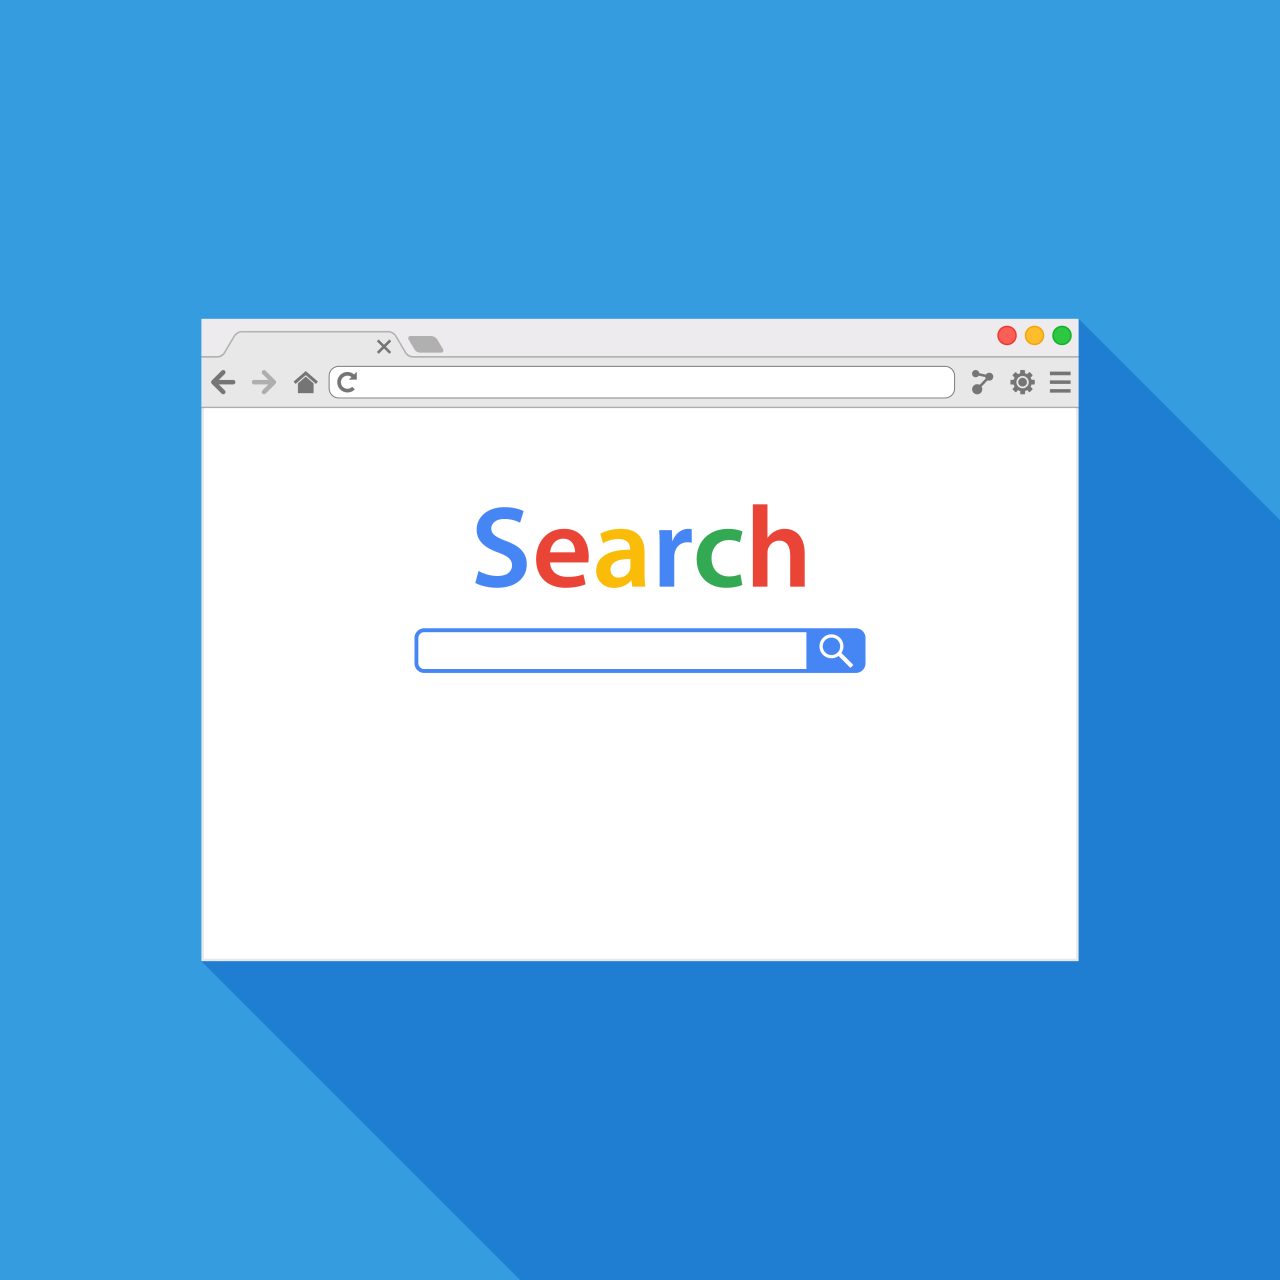 Søkemotor på internett der det står Search med samme farger som i Google.